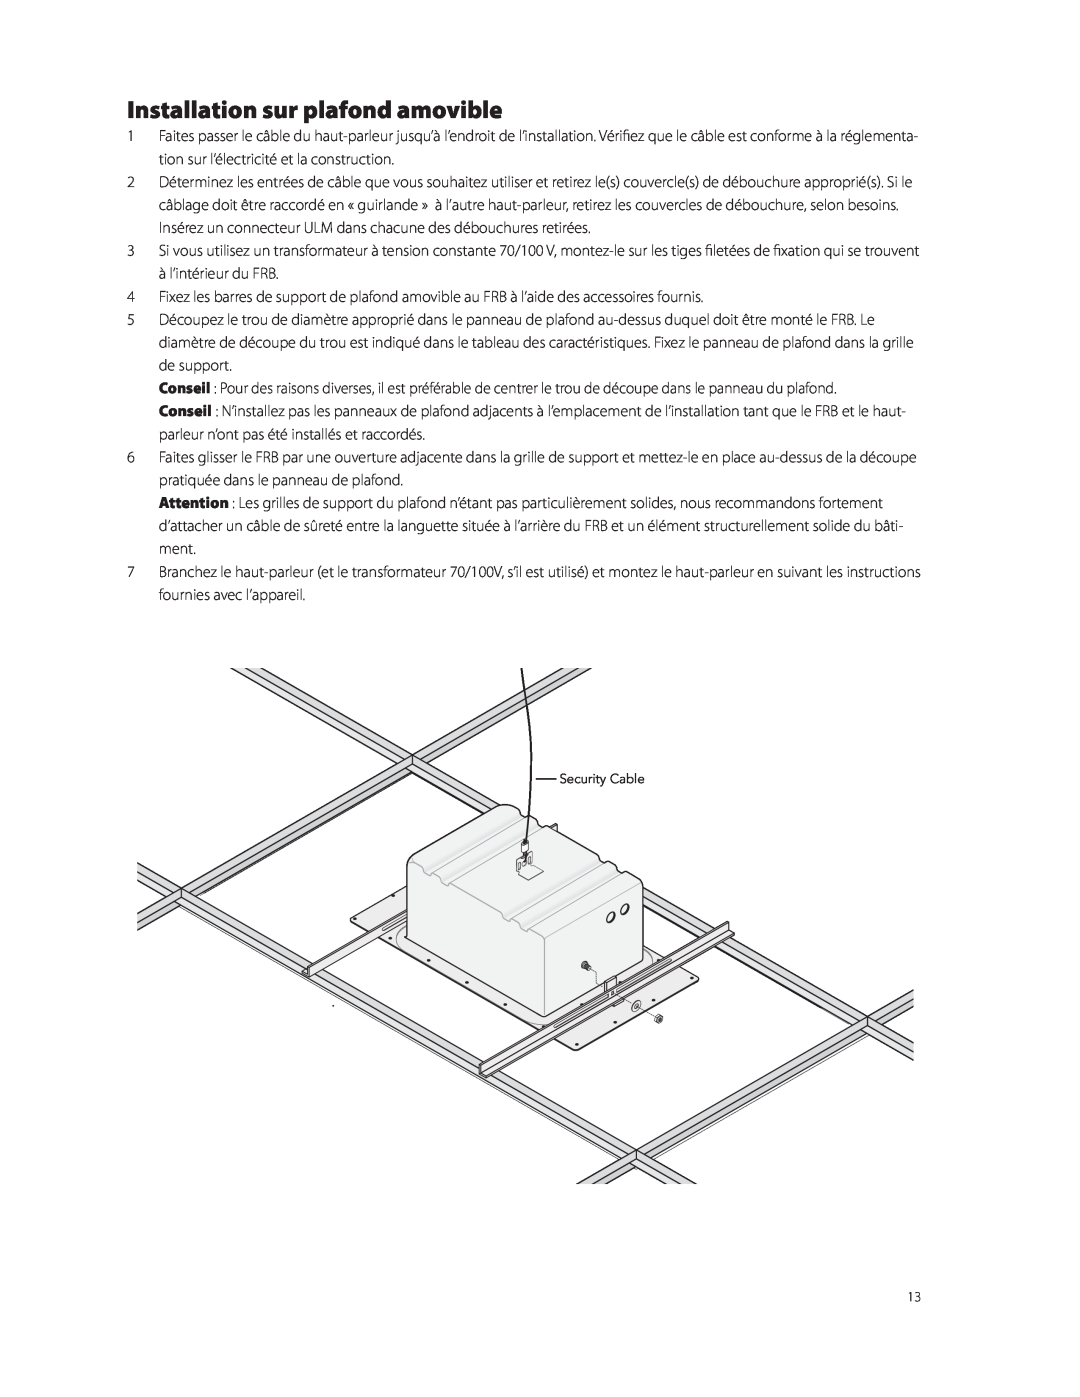 Boston Acoustics FRB6R, FRB8R, FRB5R manual Installation sur plafond amovible 